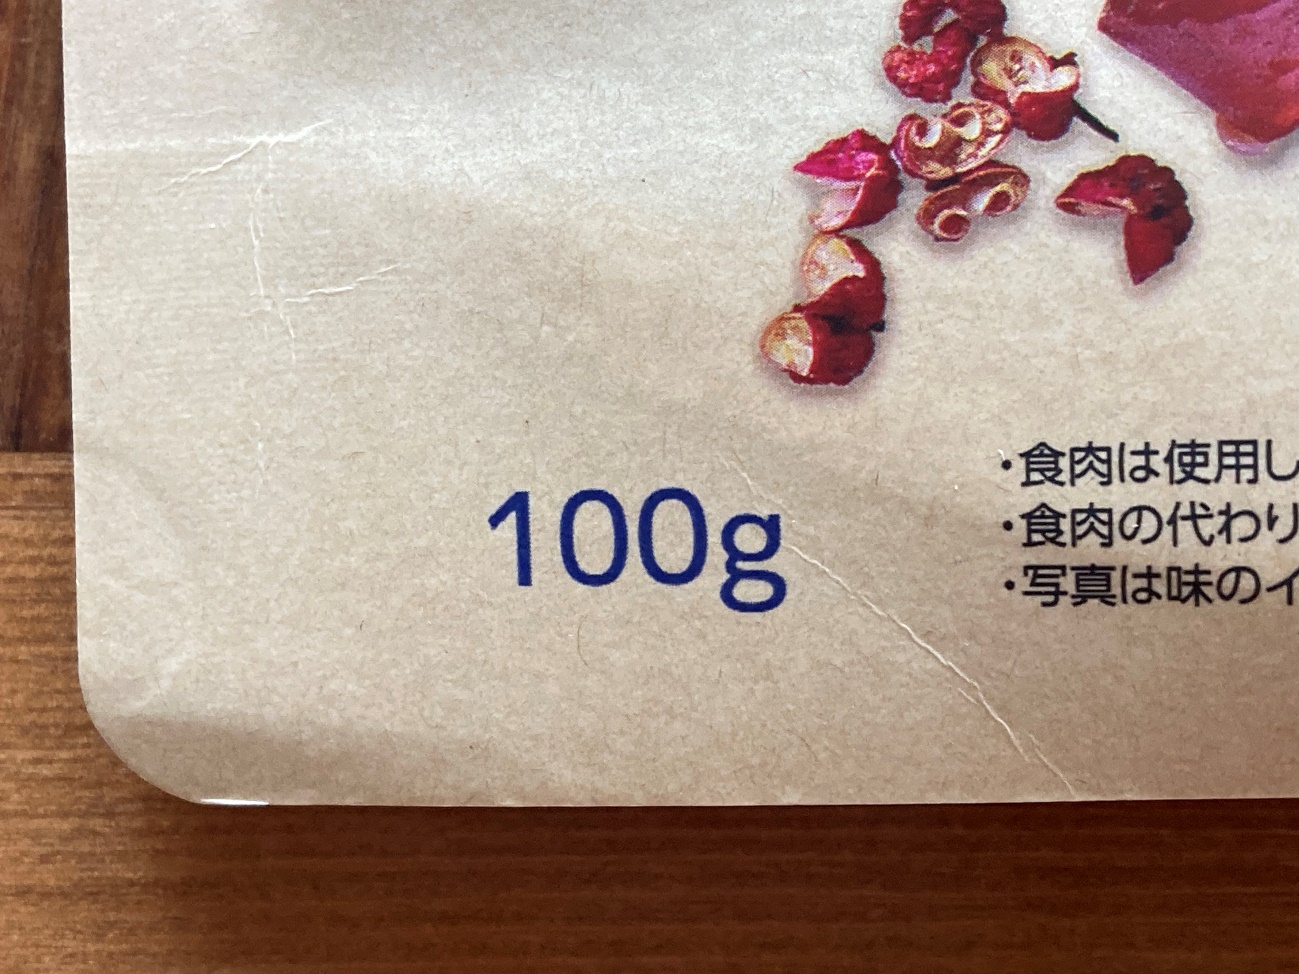 業務スーパーの味付きベジタリアンステーキオリジナルの内容量100gの表記